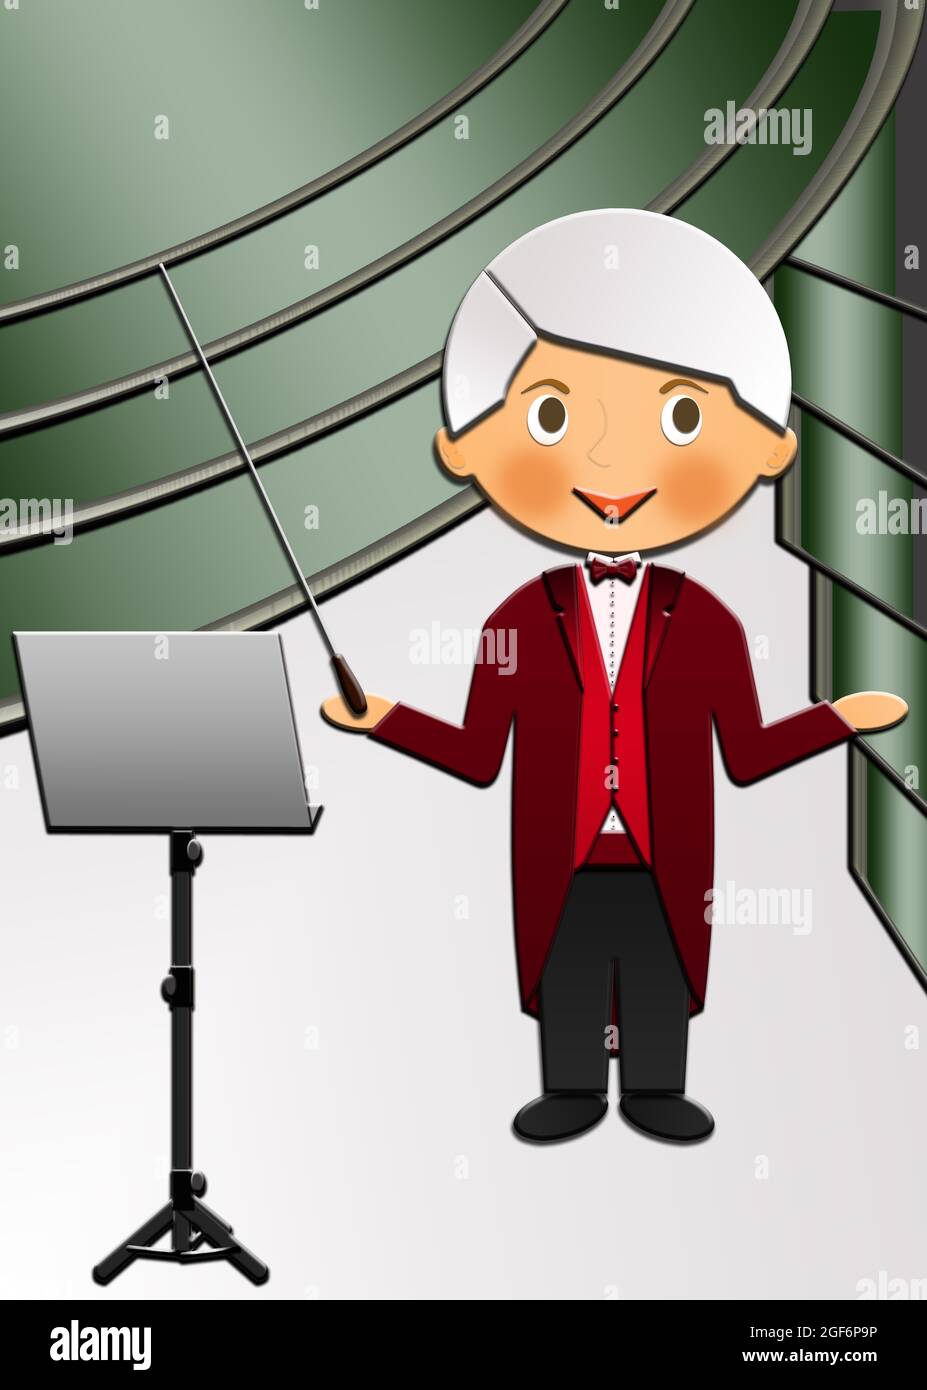 Dessin animé d'un mignon Happy Music Conductor dirigeant un orchestre sur scène. Cette illustration fait partie d'une collection de professions différentes. Banque D'Images